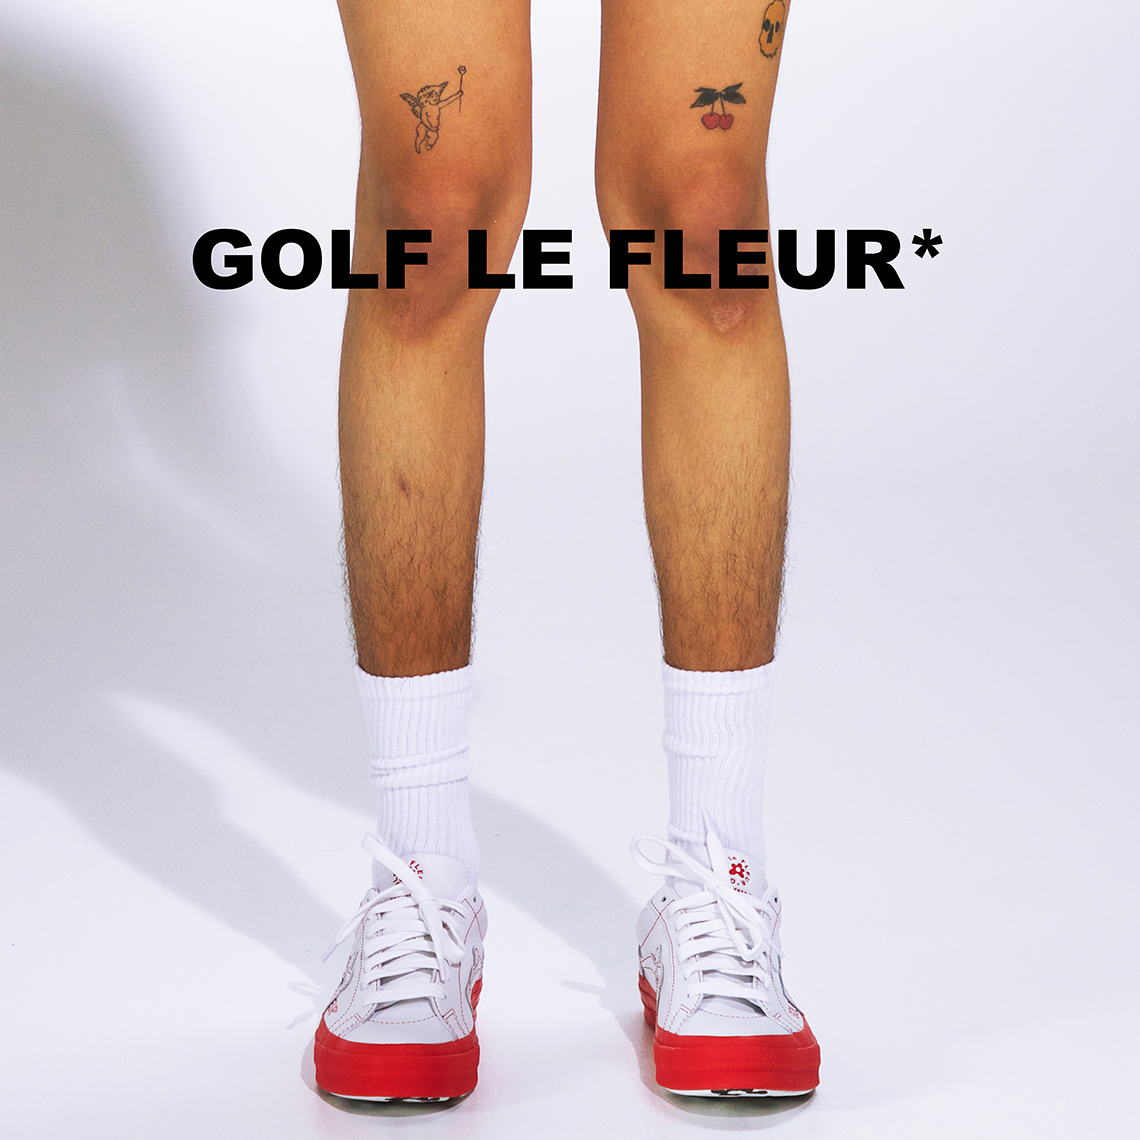 Converse Golf Le Fleur Color Block Pack Release Date 2